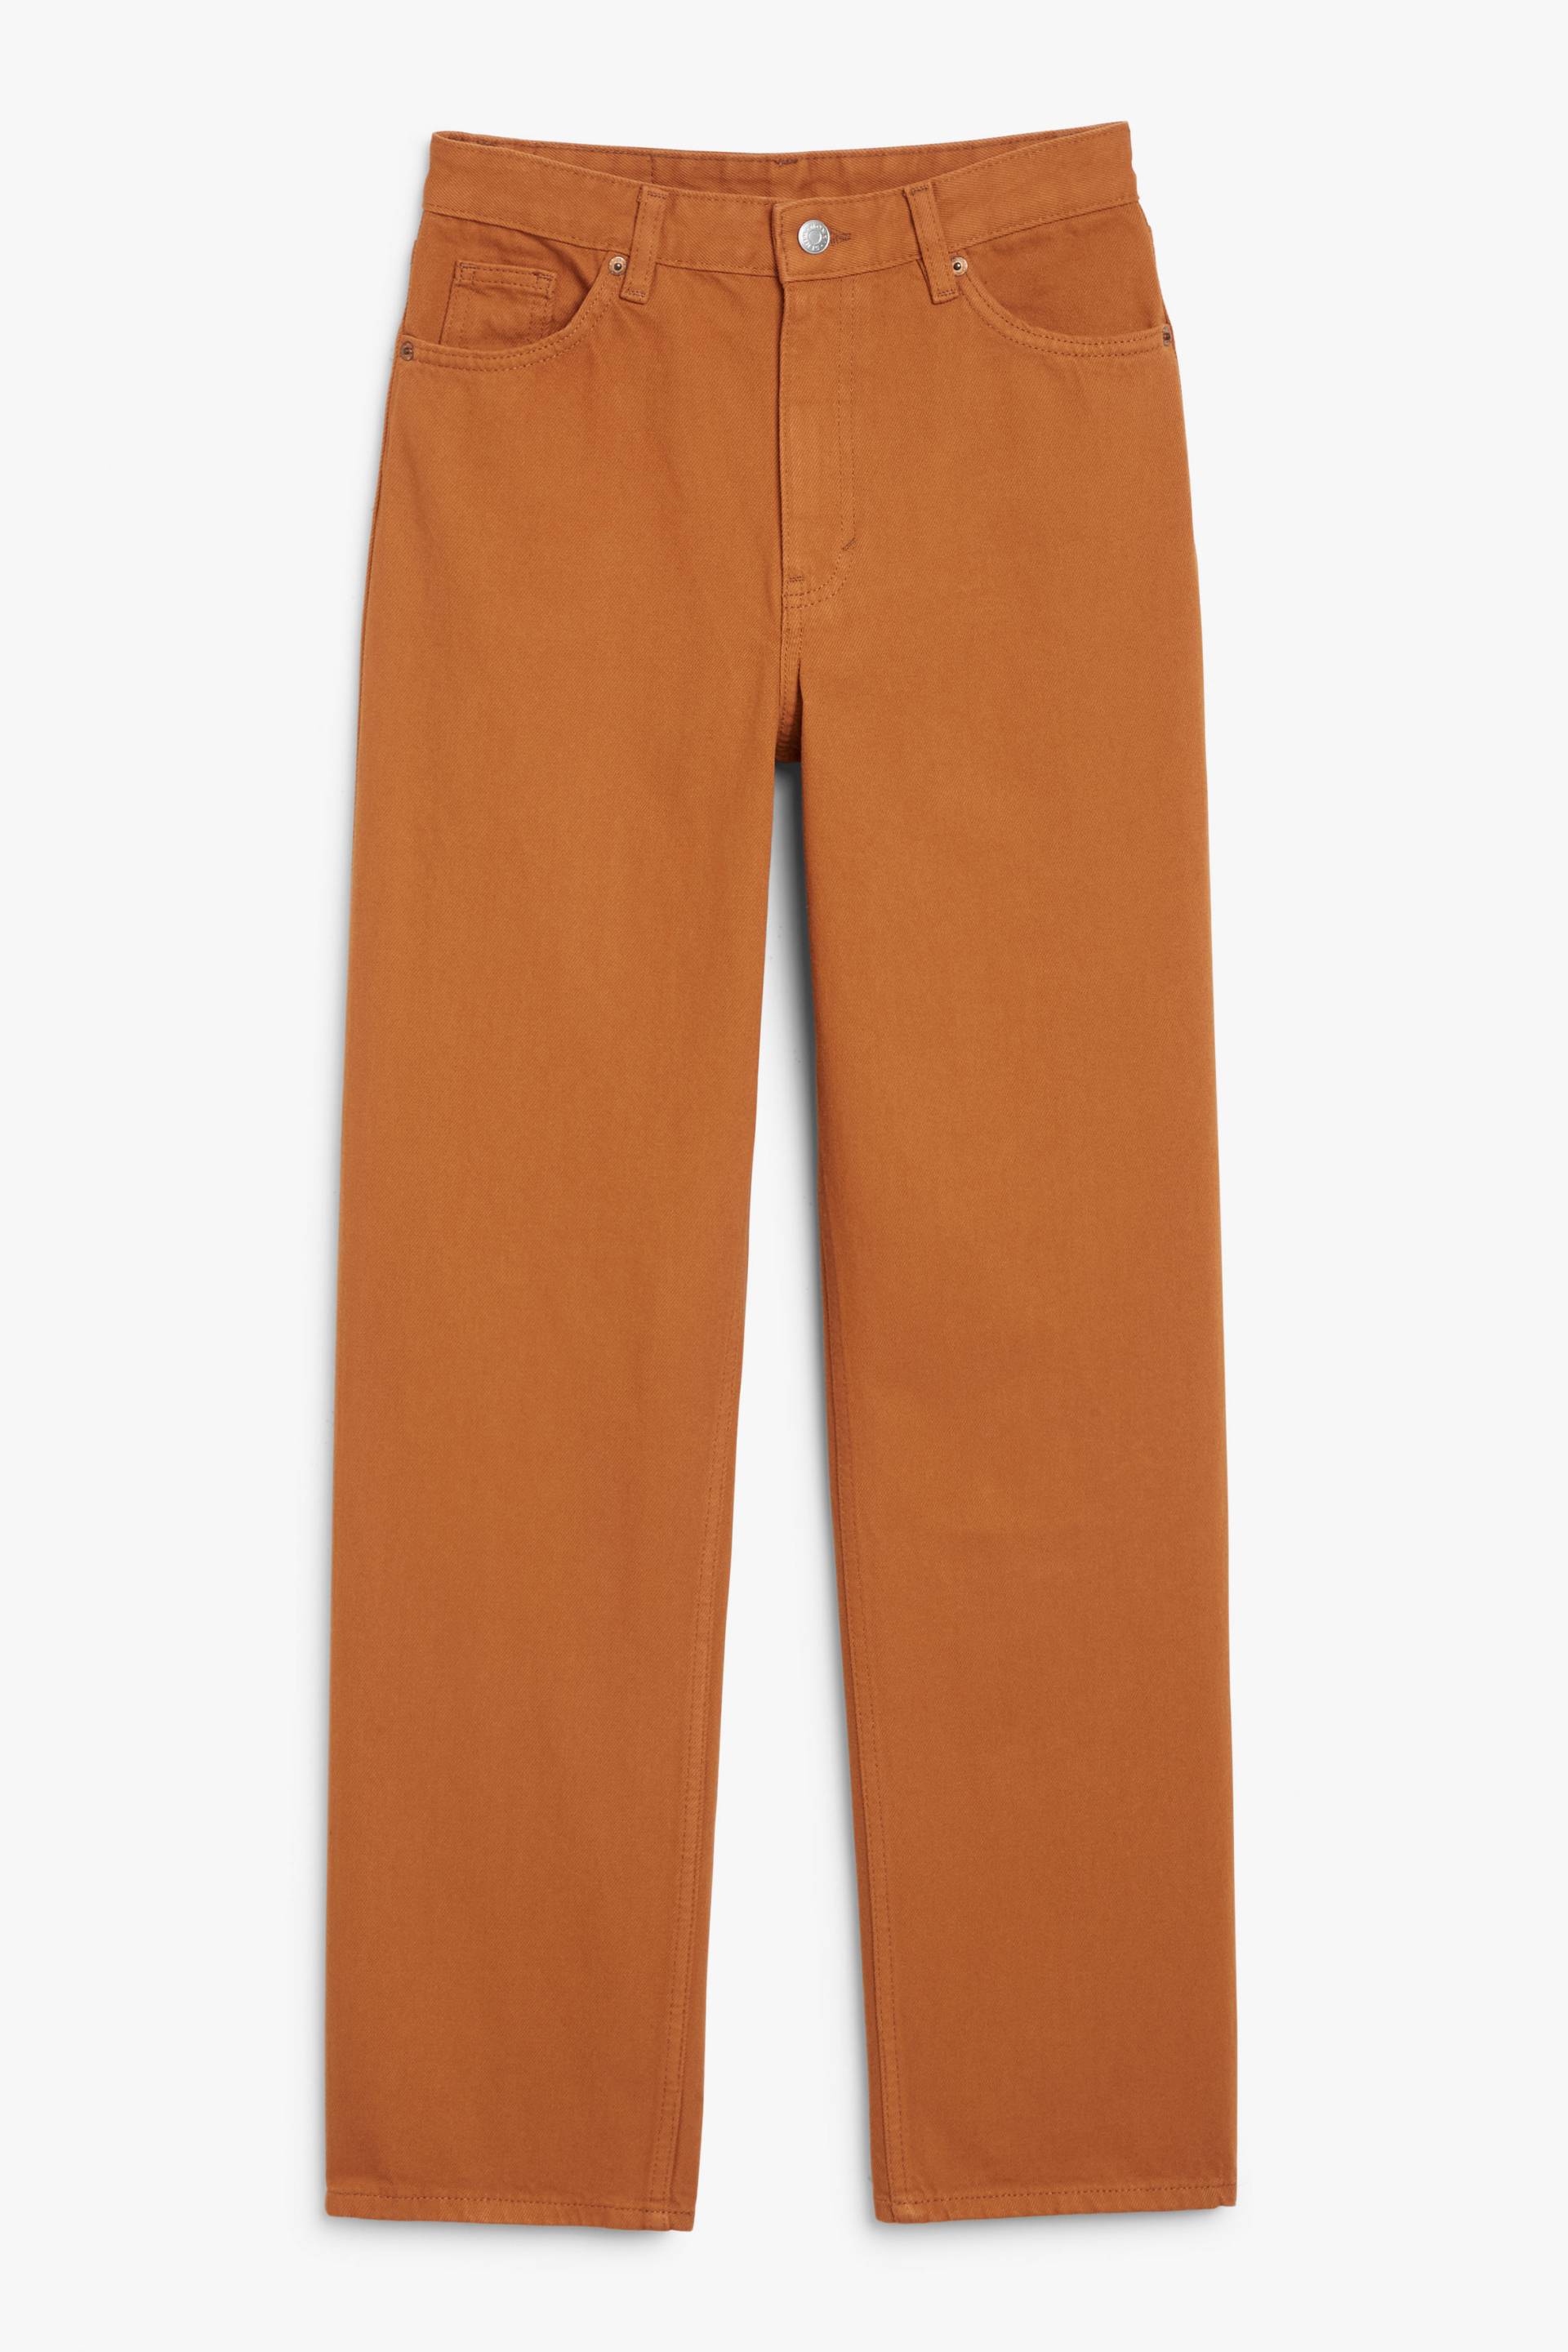 Monki Taillierte braune Jeans Taiki mit geradem Bein Rostbraun, Baggy in Größe W 25. Farbe: Rust brown von Monki